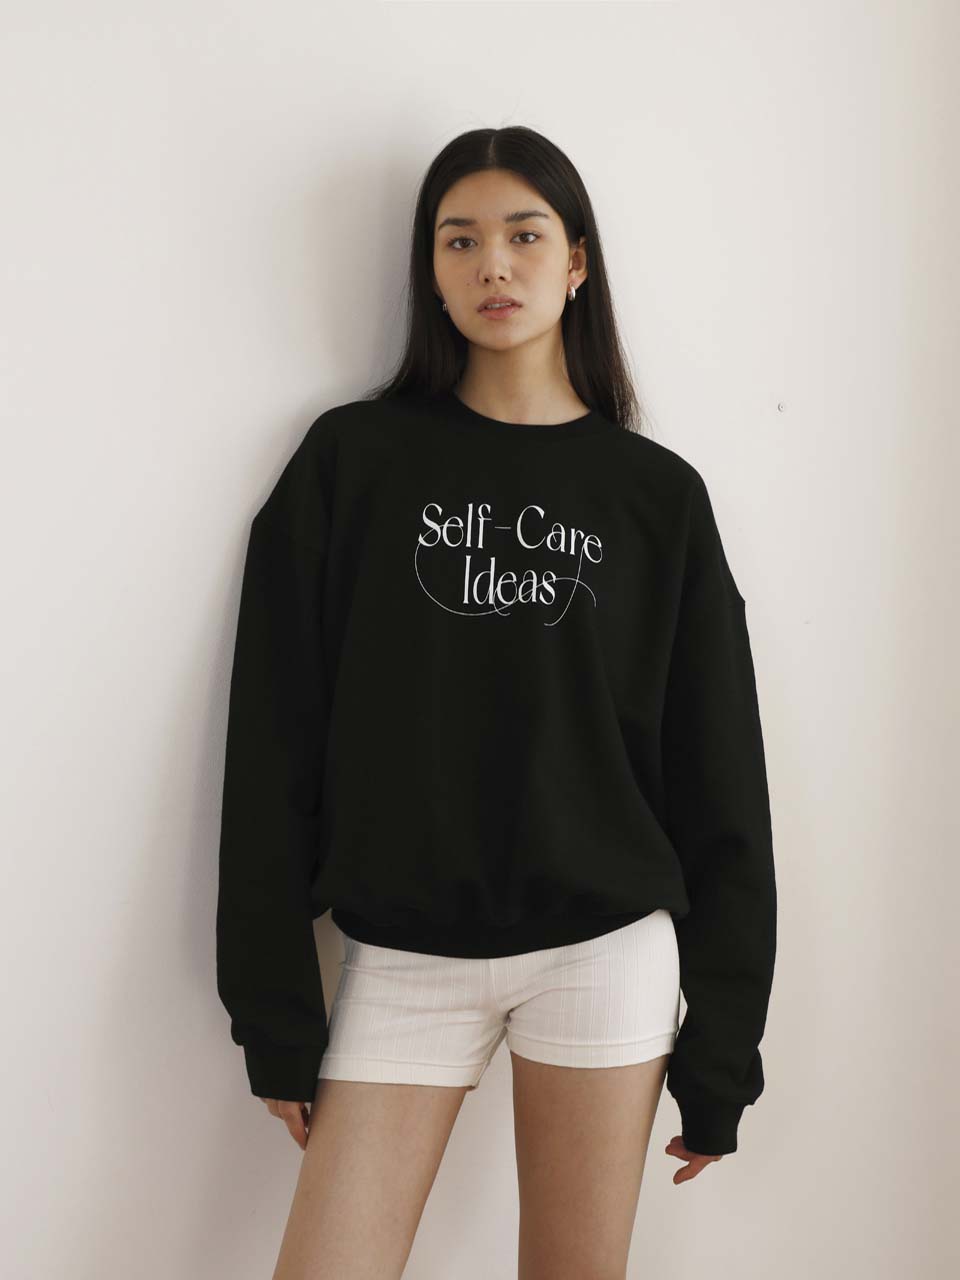 Self-care ideas Sweatshirt black